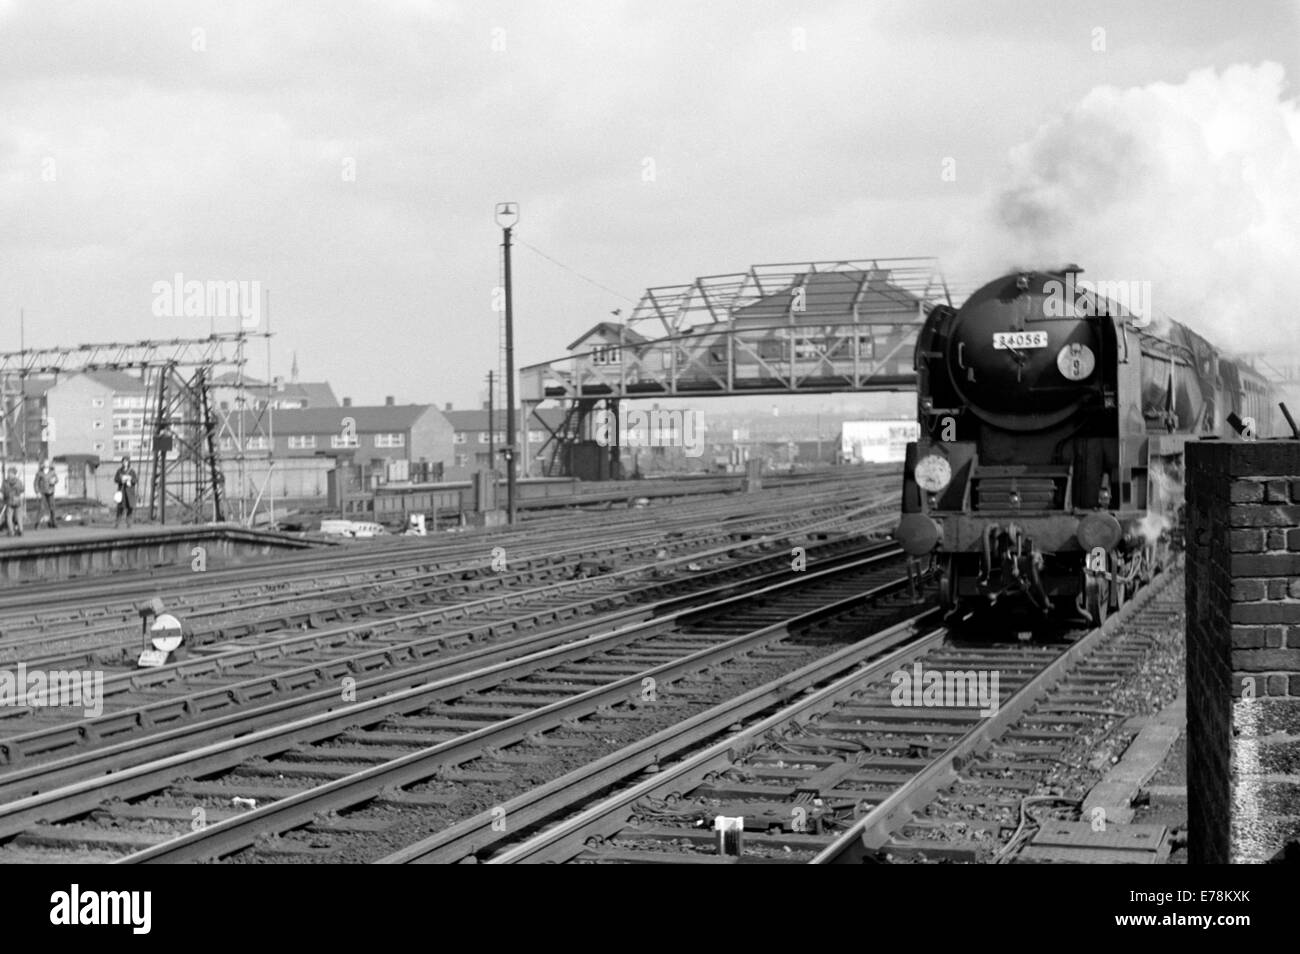 Originale il treno a vapore battaglia della Gran Bretagna classe 34056 croydon operanti su ferrovie britanniche durante gli anni sessanta Foto Stock